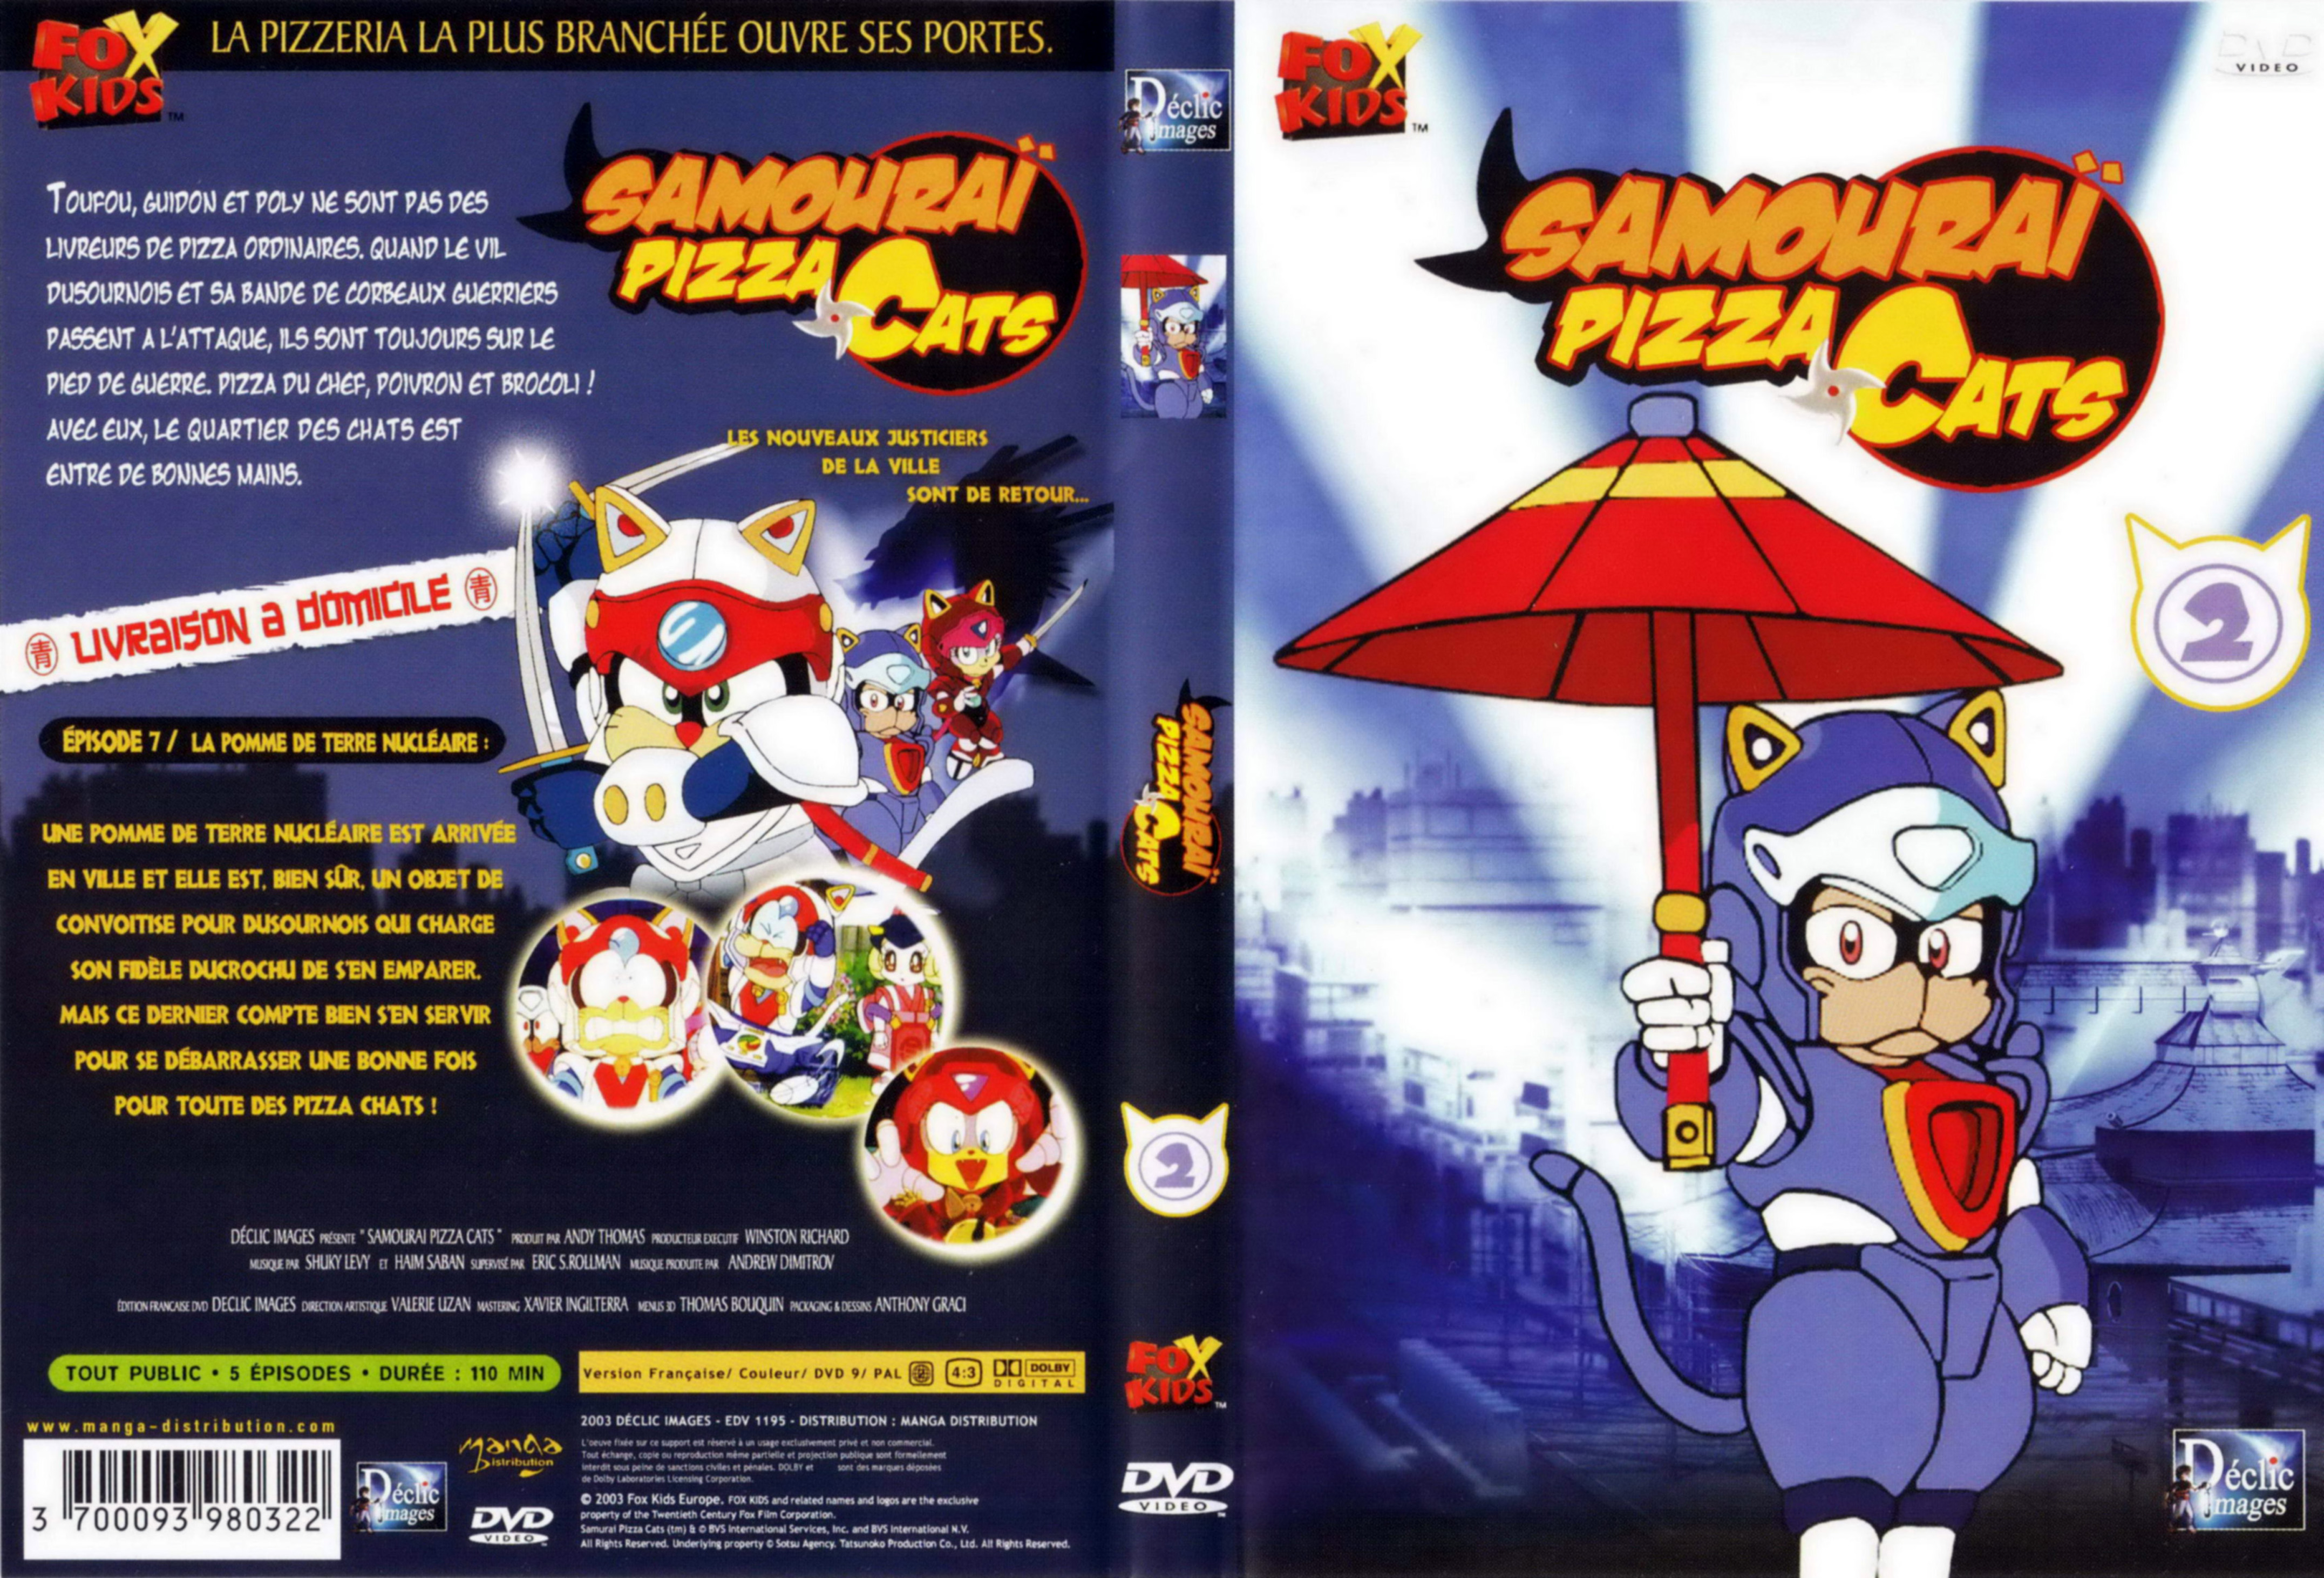 Jaquette Dvd De Samourai Pizza Cats Dvd 2 Cinéma Passion 